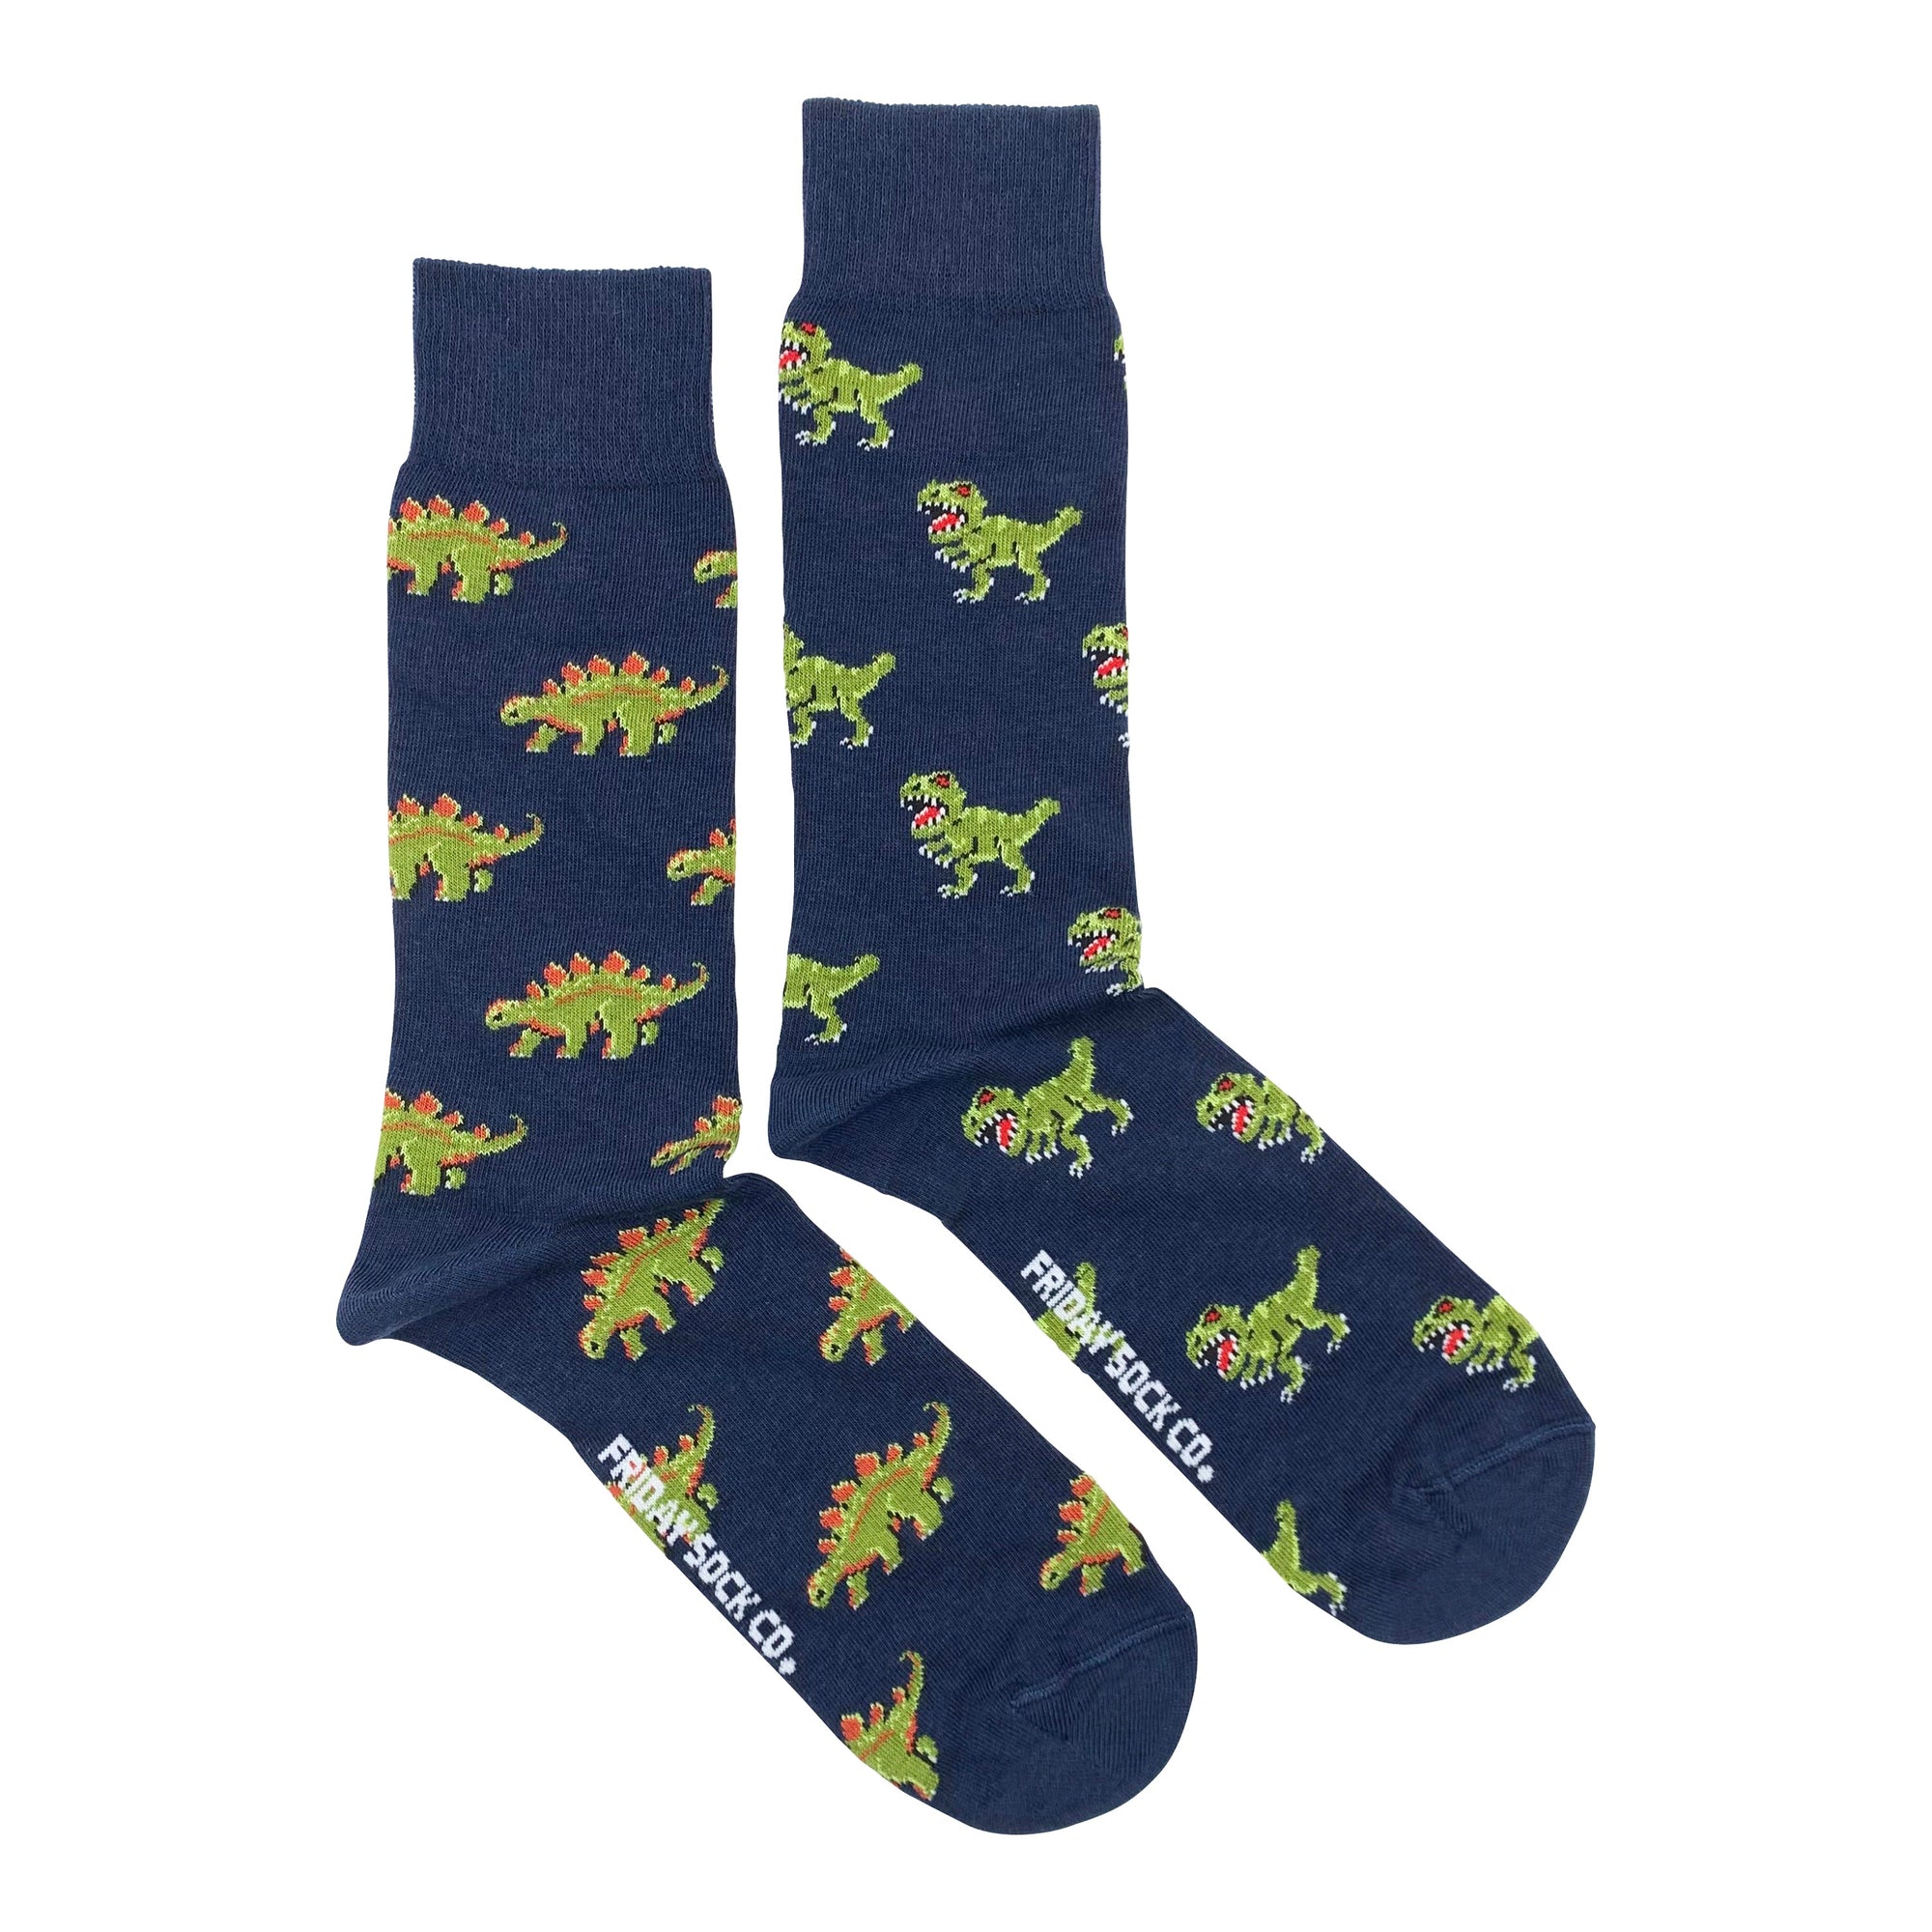 Friday Sock Co. Dinosaurs